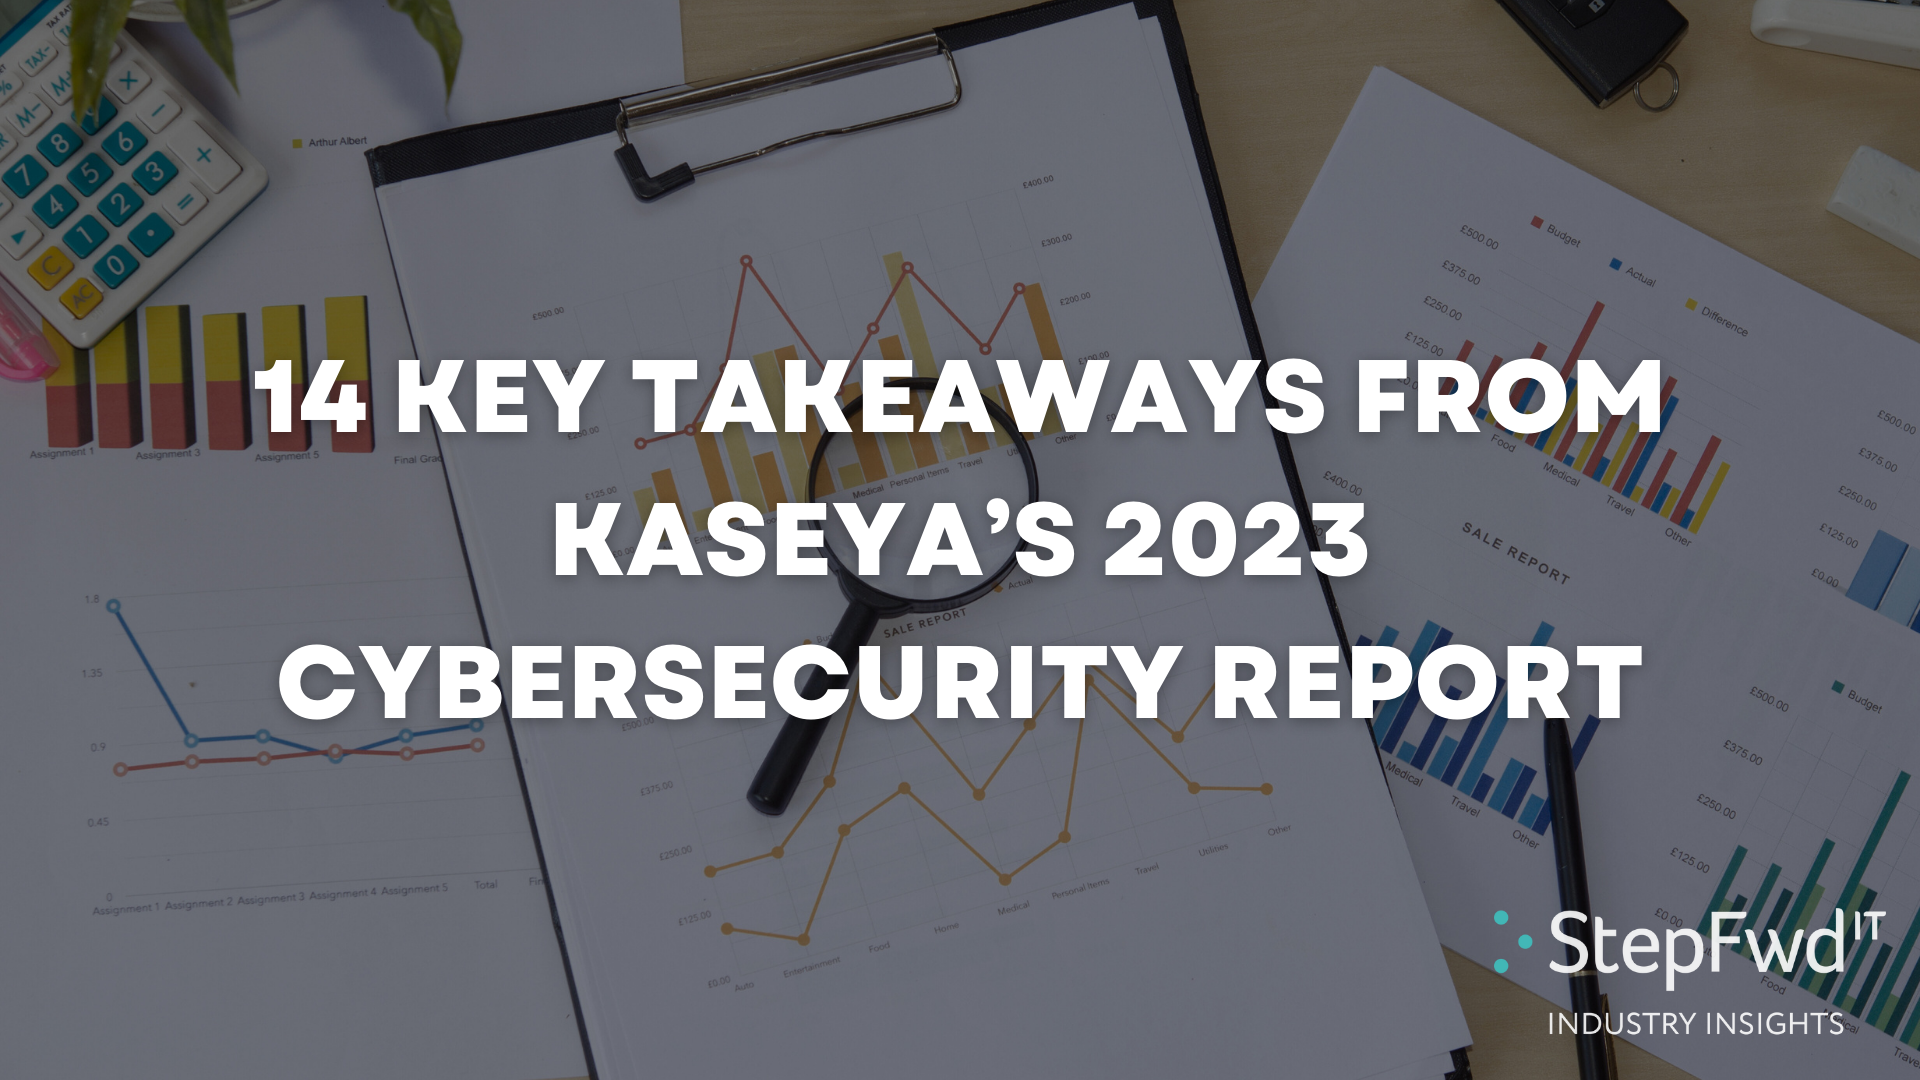 14 Key Takeaways from Kaseya’s Cybersecurity Survey Report 2023